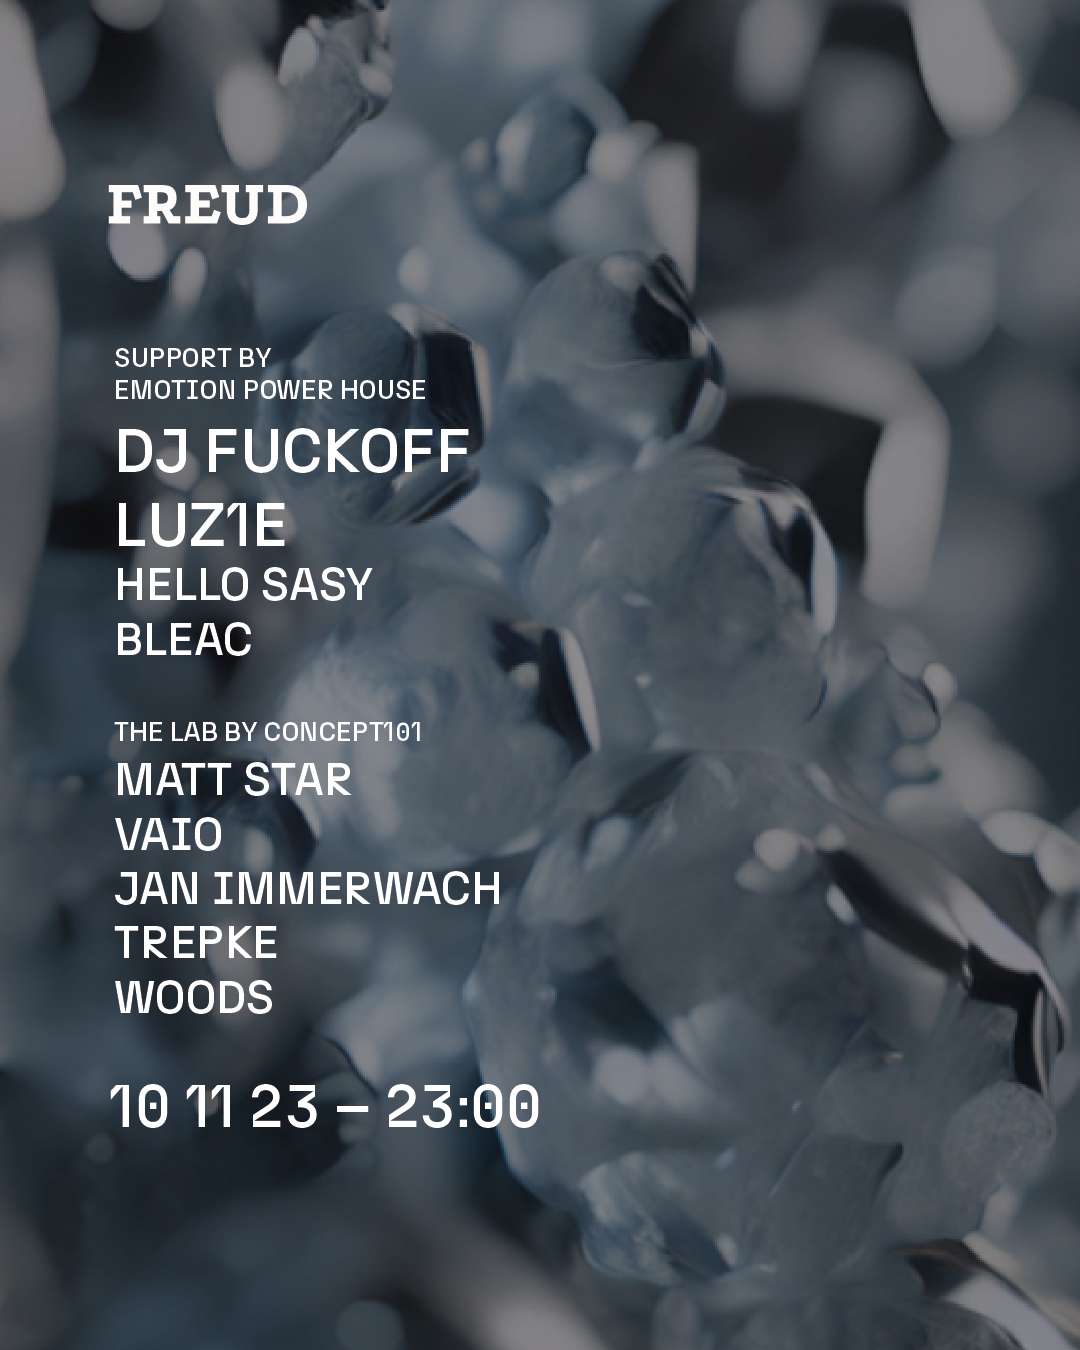 DJ Fuckoff, LUZ1E u.v.m. at FREUD Club - フライヤー表